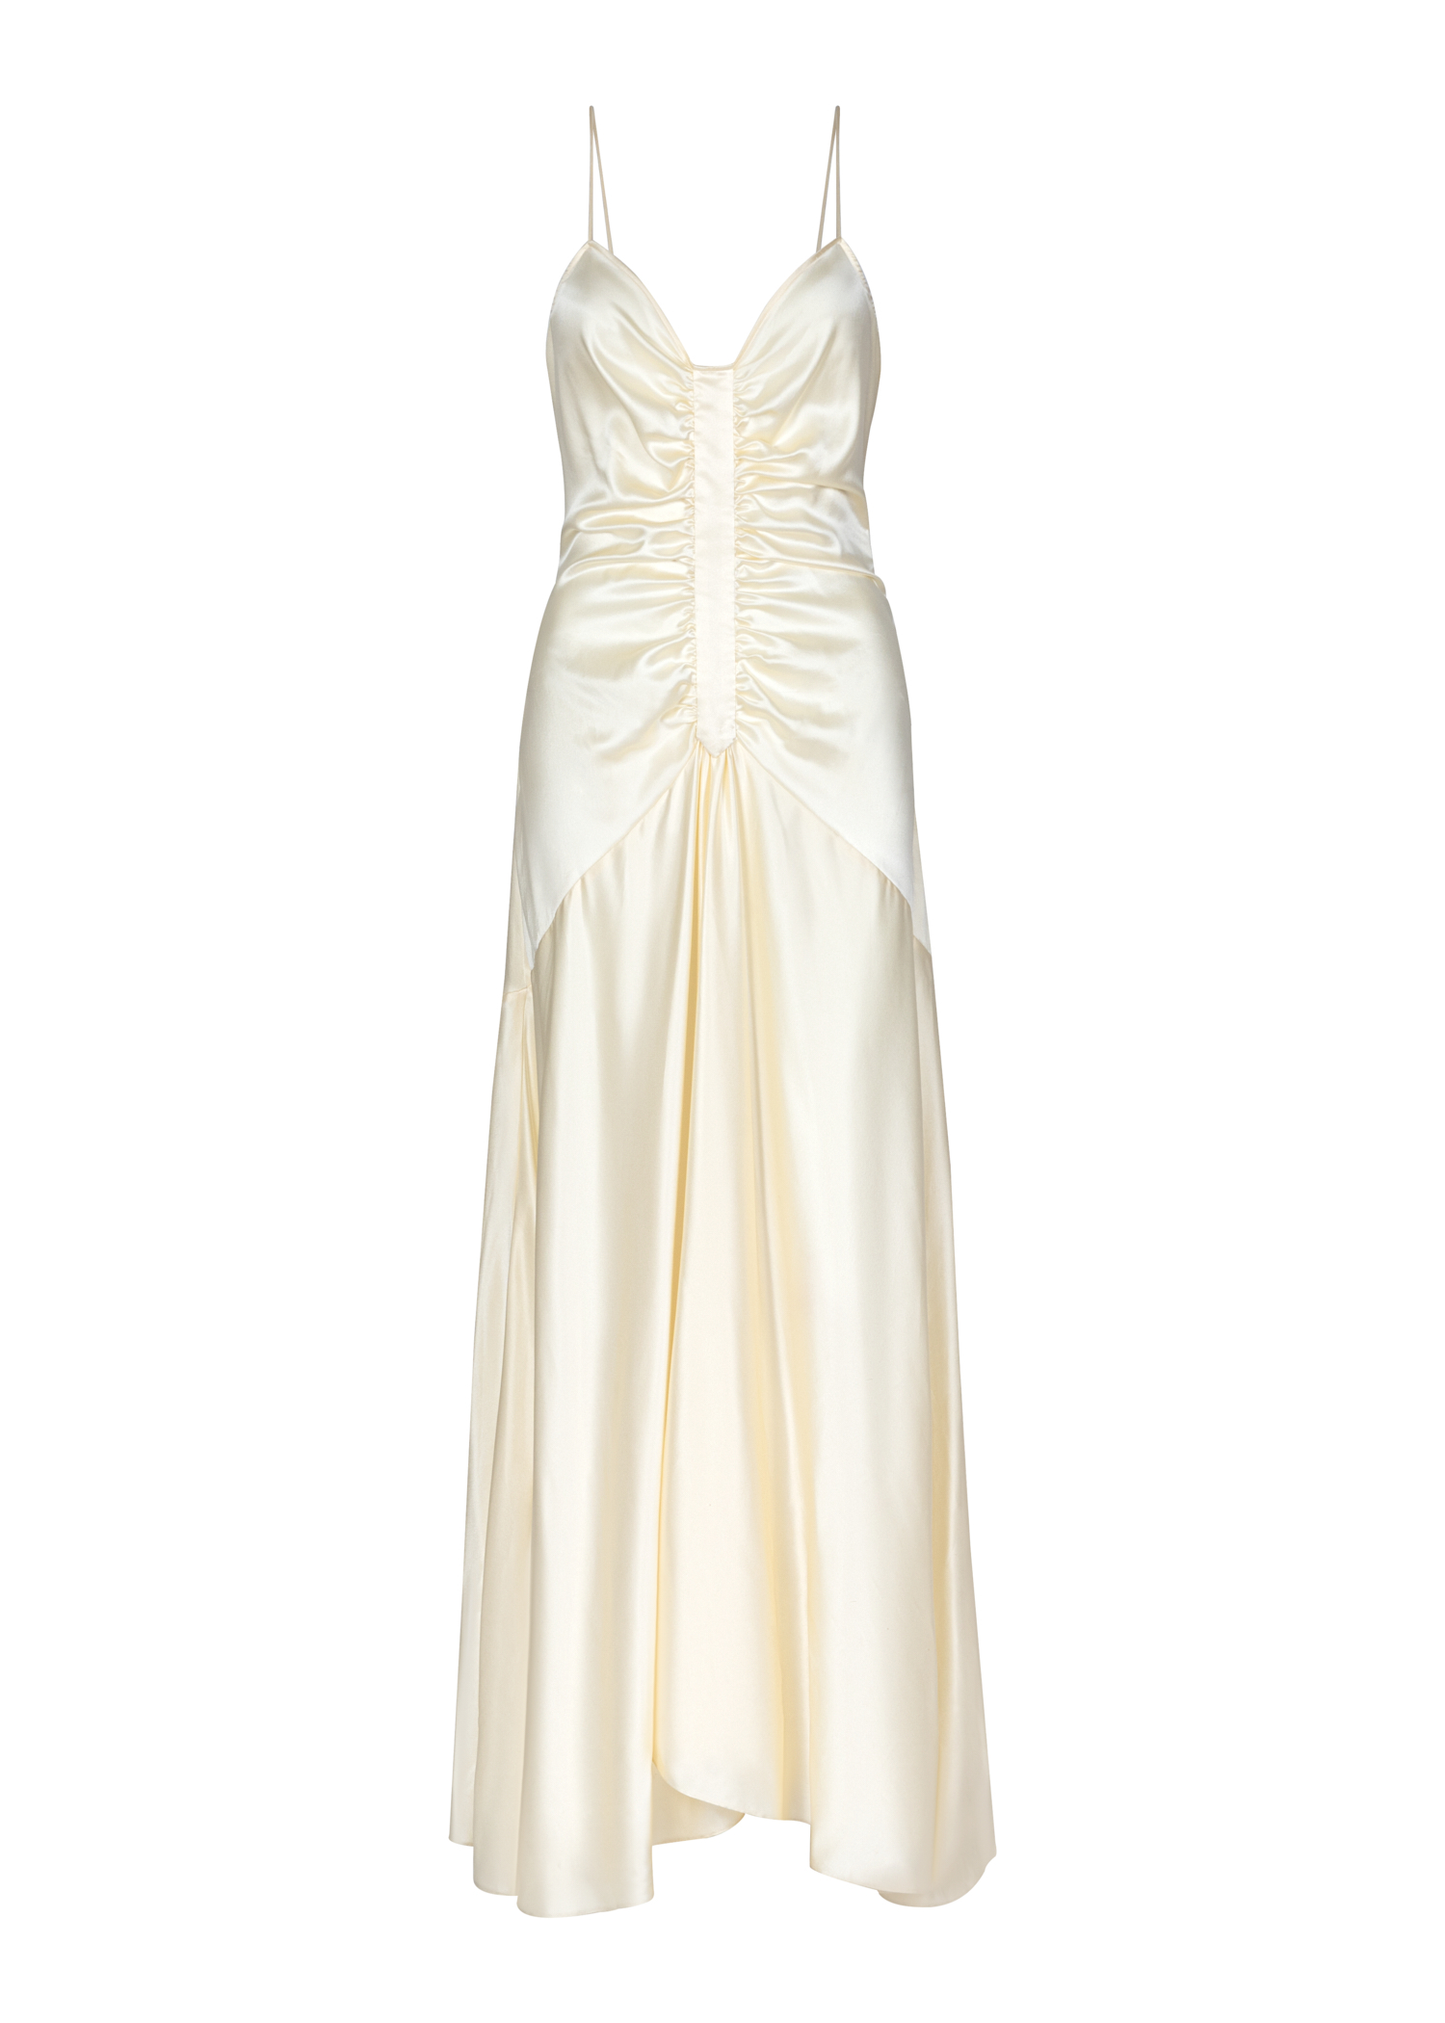 Hattie Dress in Ivory Silk Charmeuse